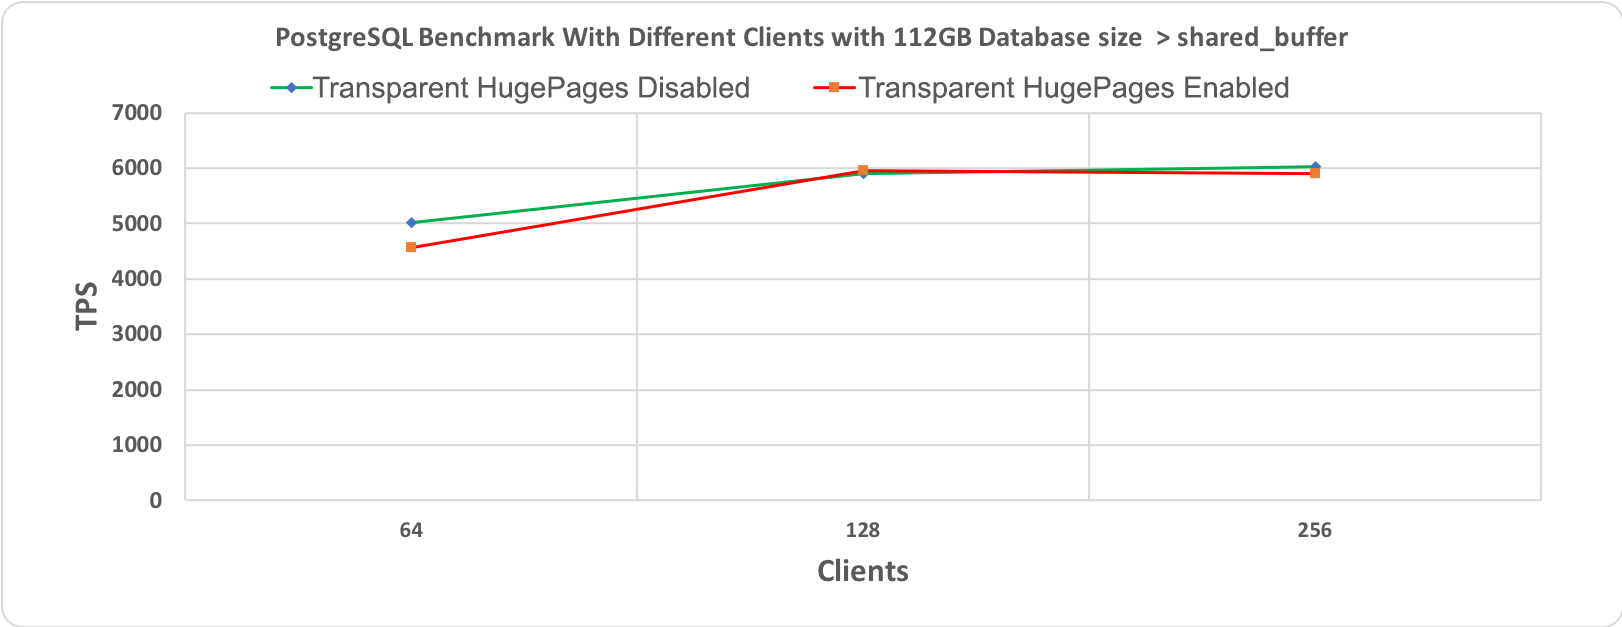 Рис. 3.2 Тест производительности PostgreSQL, длительность 10 минут при размере базы данных (112 гигабайт) > shared_buffer (64 гигабайт)